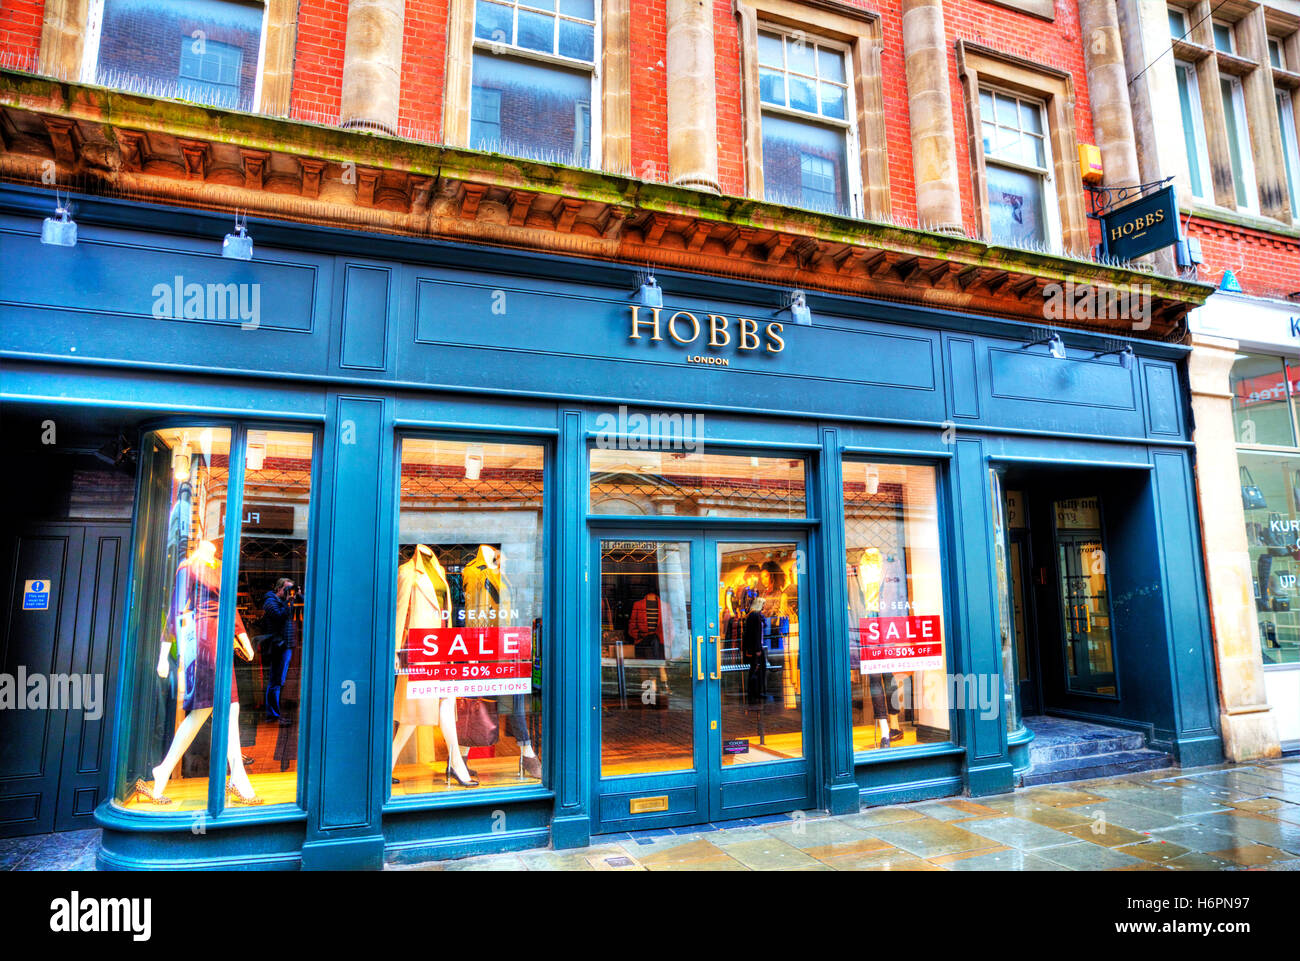 Hobbs fashion Londres magasin de vêtements magasin de vêtements magasins  Nottingham UK GO avant extérieure signe signes façade stores Photo Stock -  Alamy